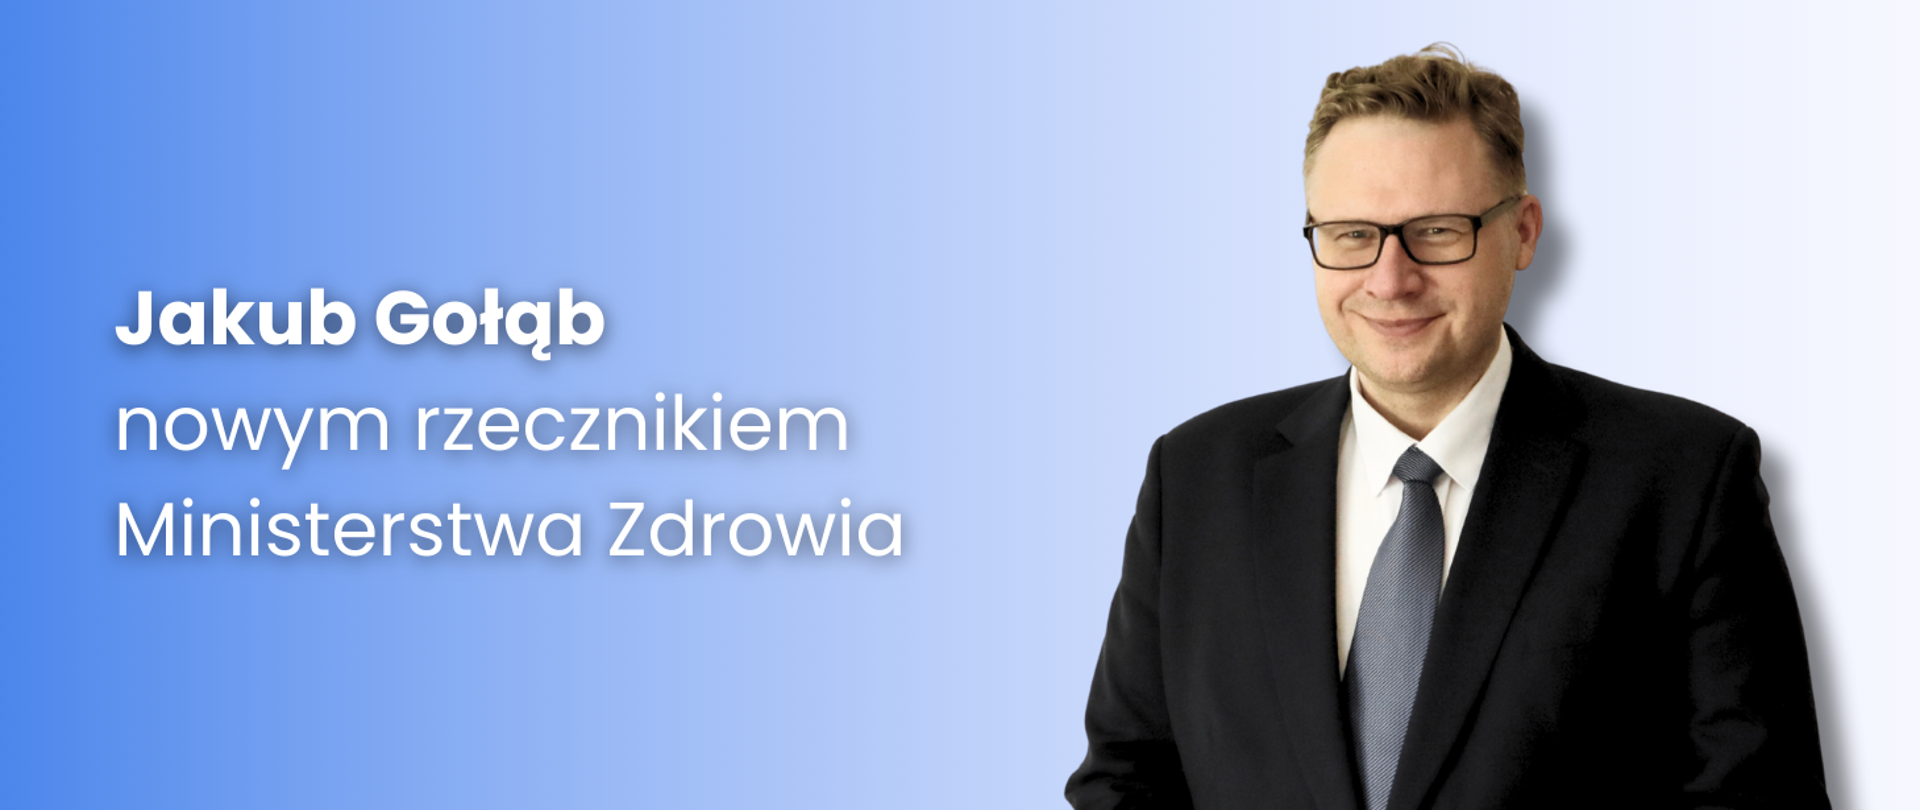 Jakub Gołąb nowym rzecznikiem Ministerstwa Zdrowia